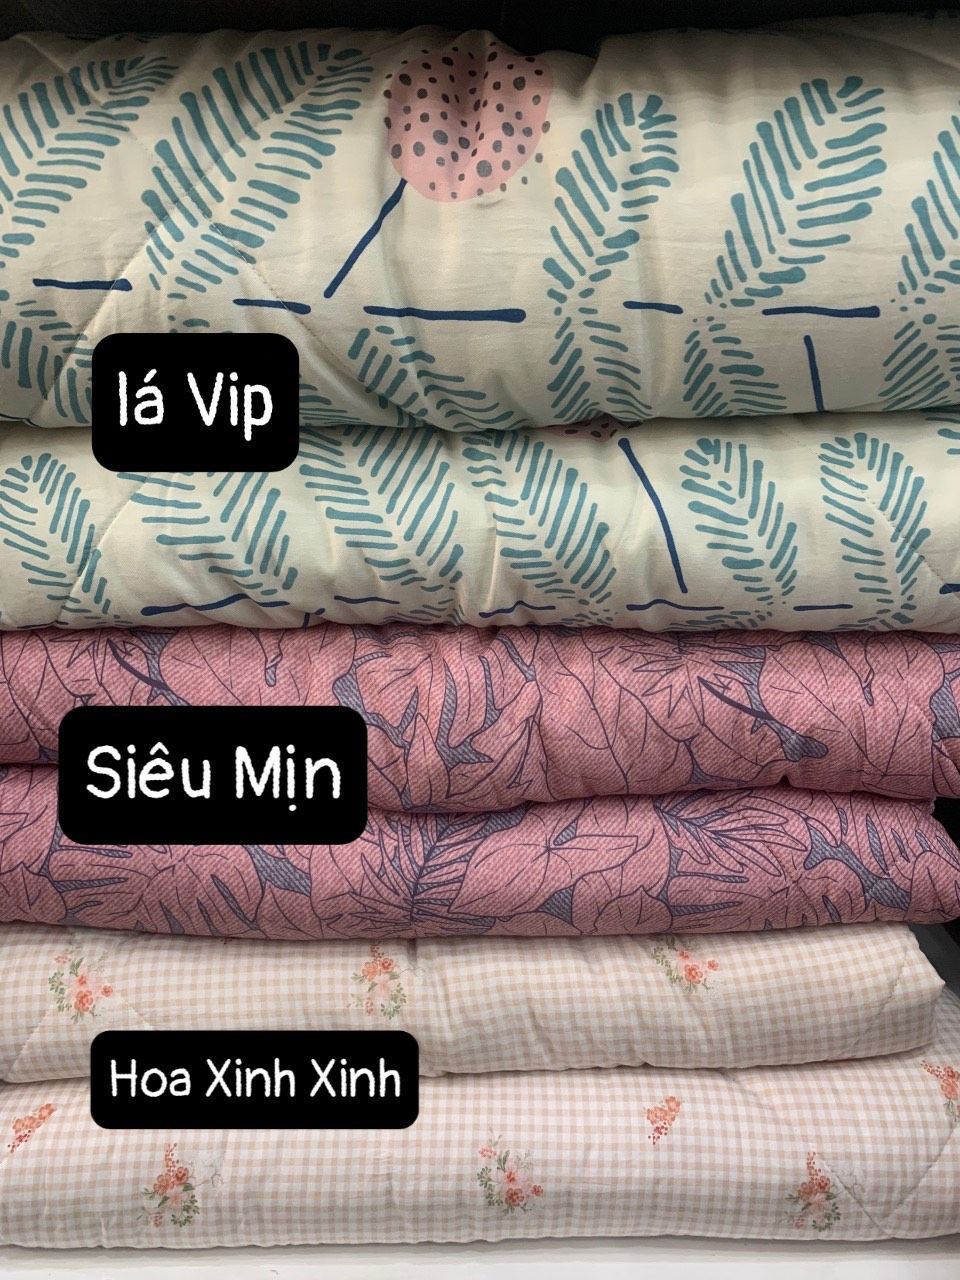  Bedding Bộ Micro moda Hoa Xinh Xinh 